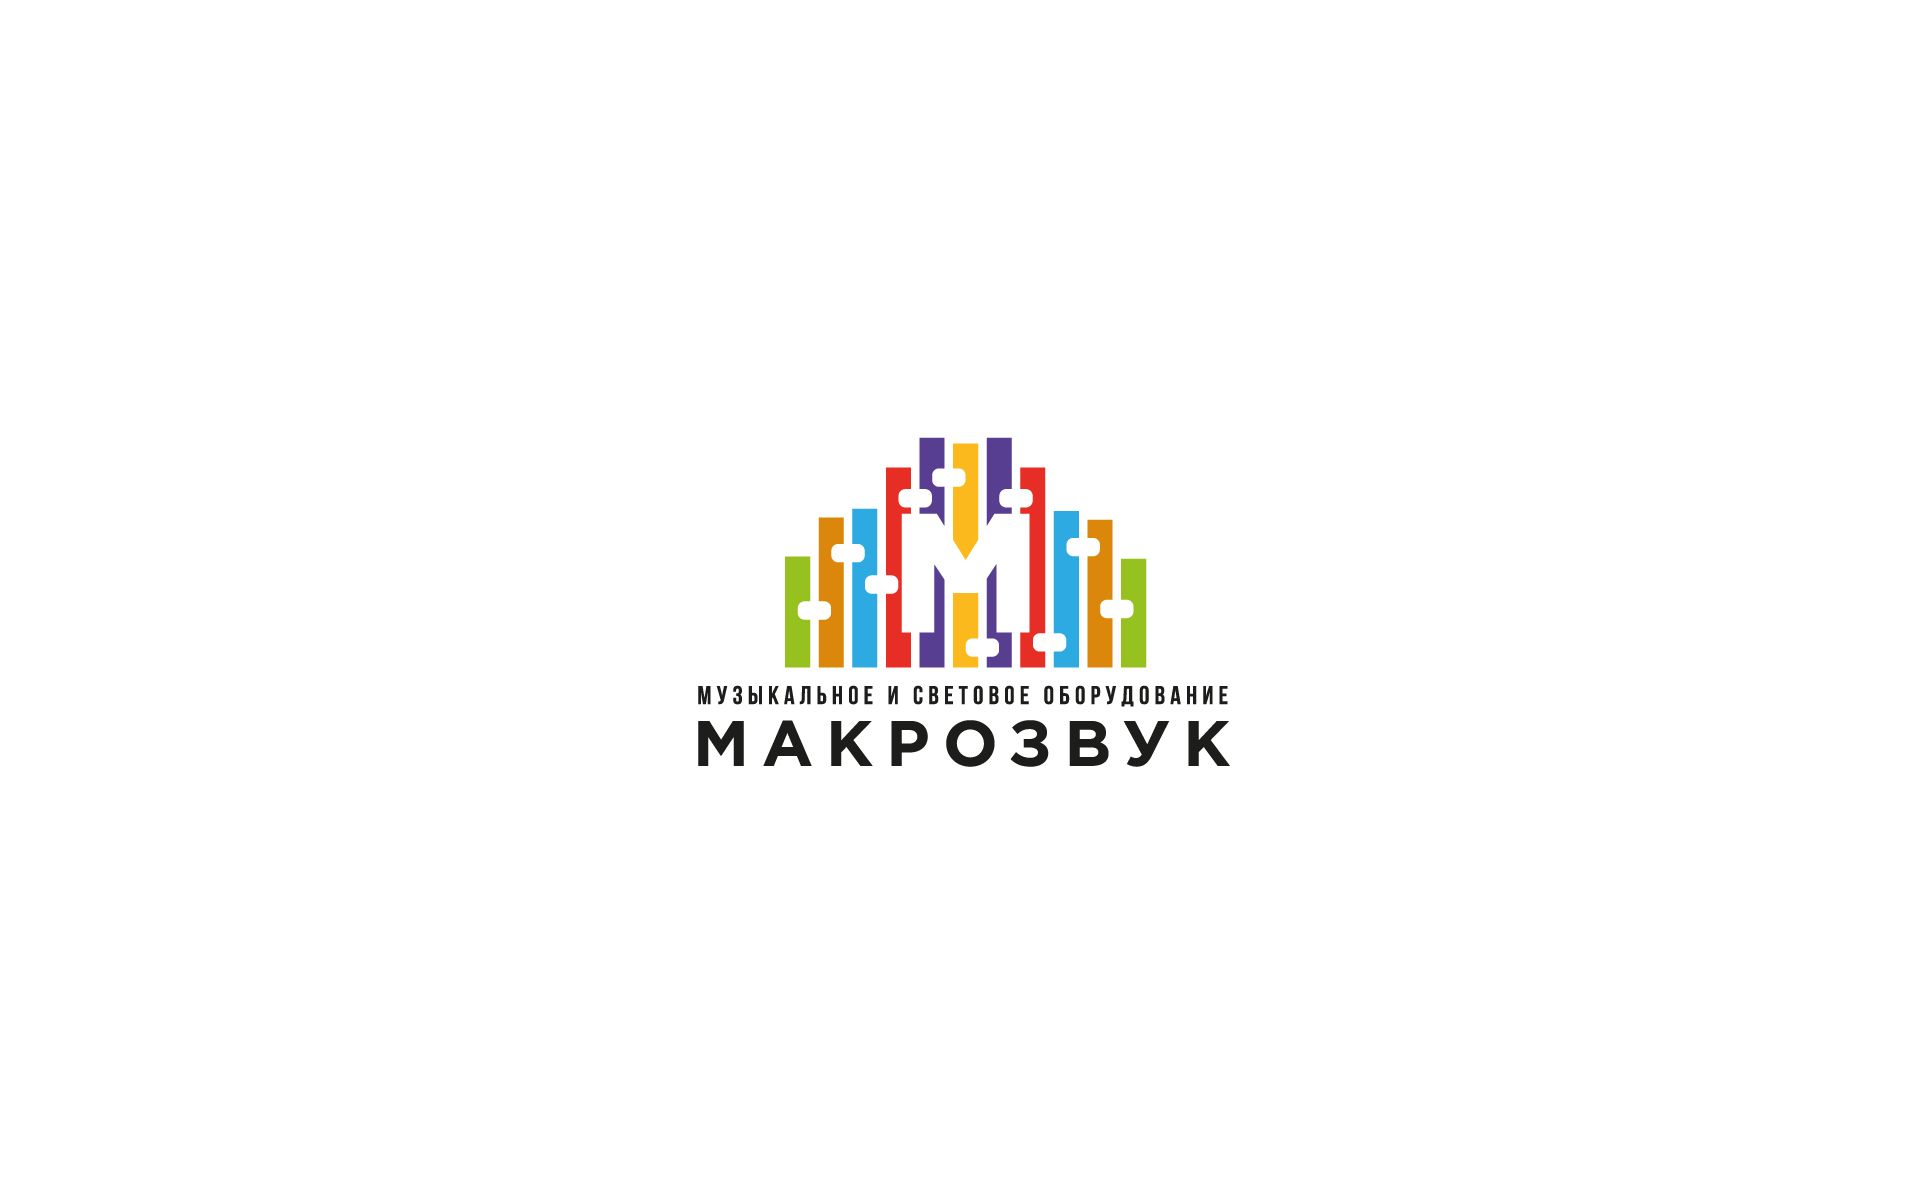 Логотип для компании (свето-звуковое оборудование) - дизайнер U4po4mak